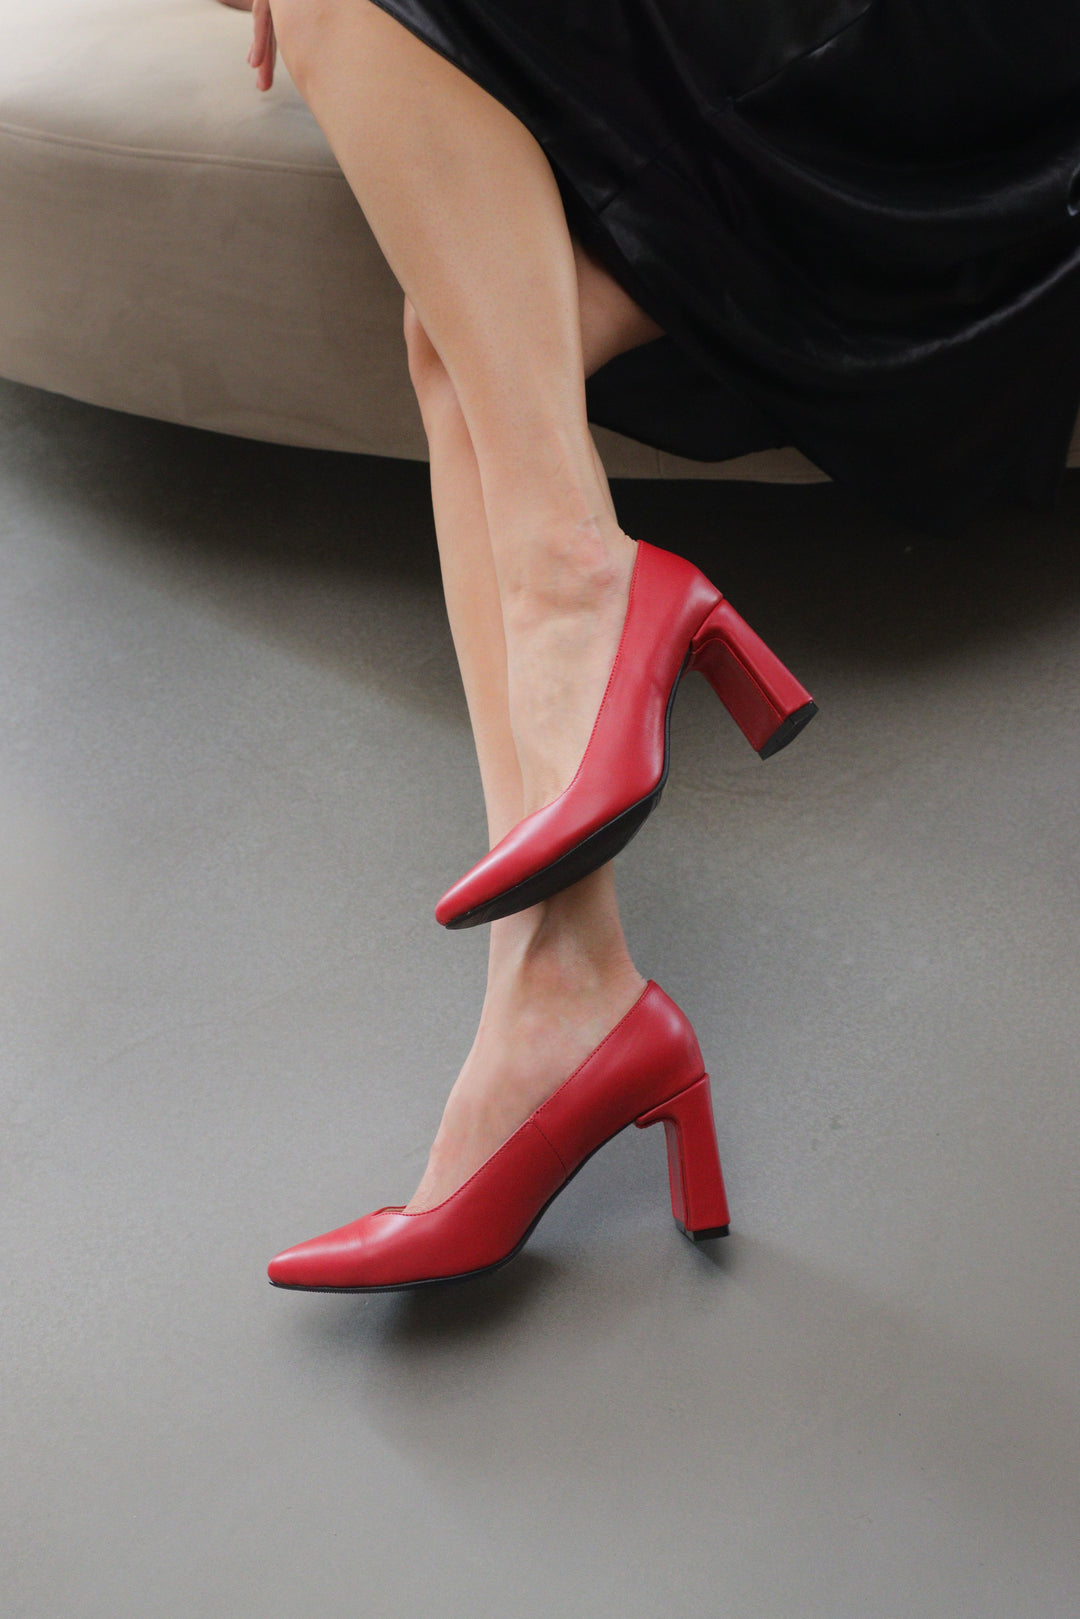 "Scarlet Red Heels"